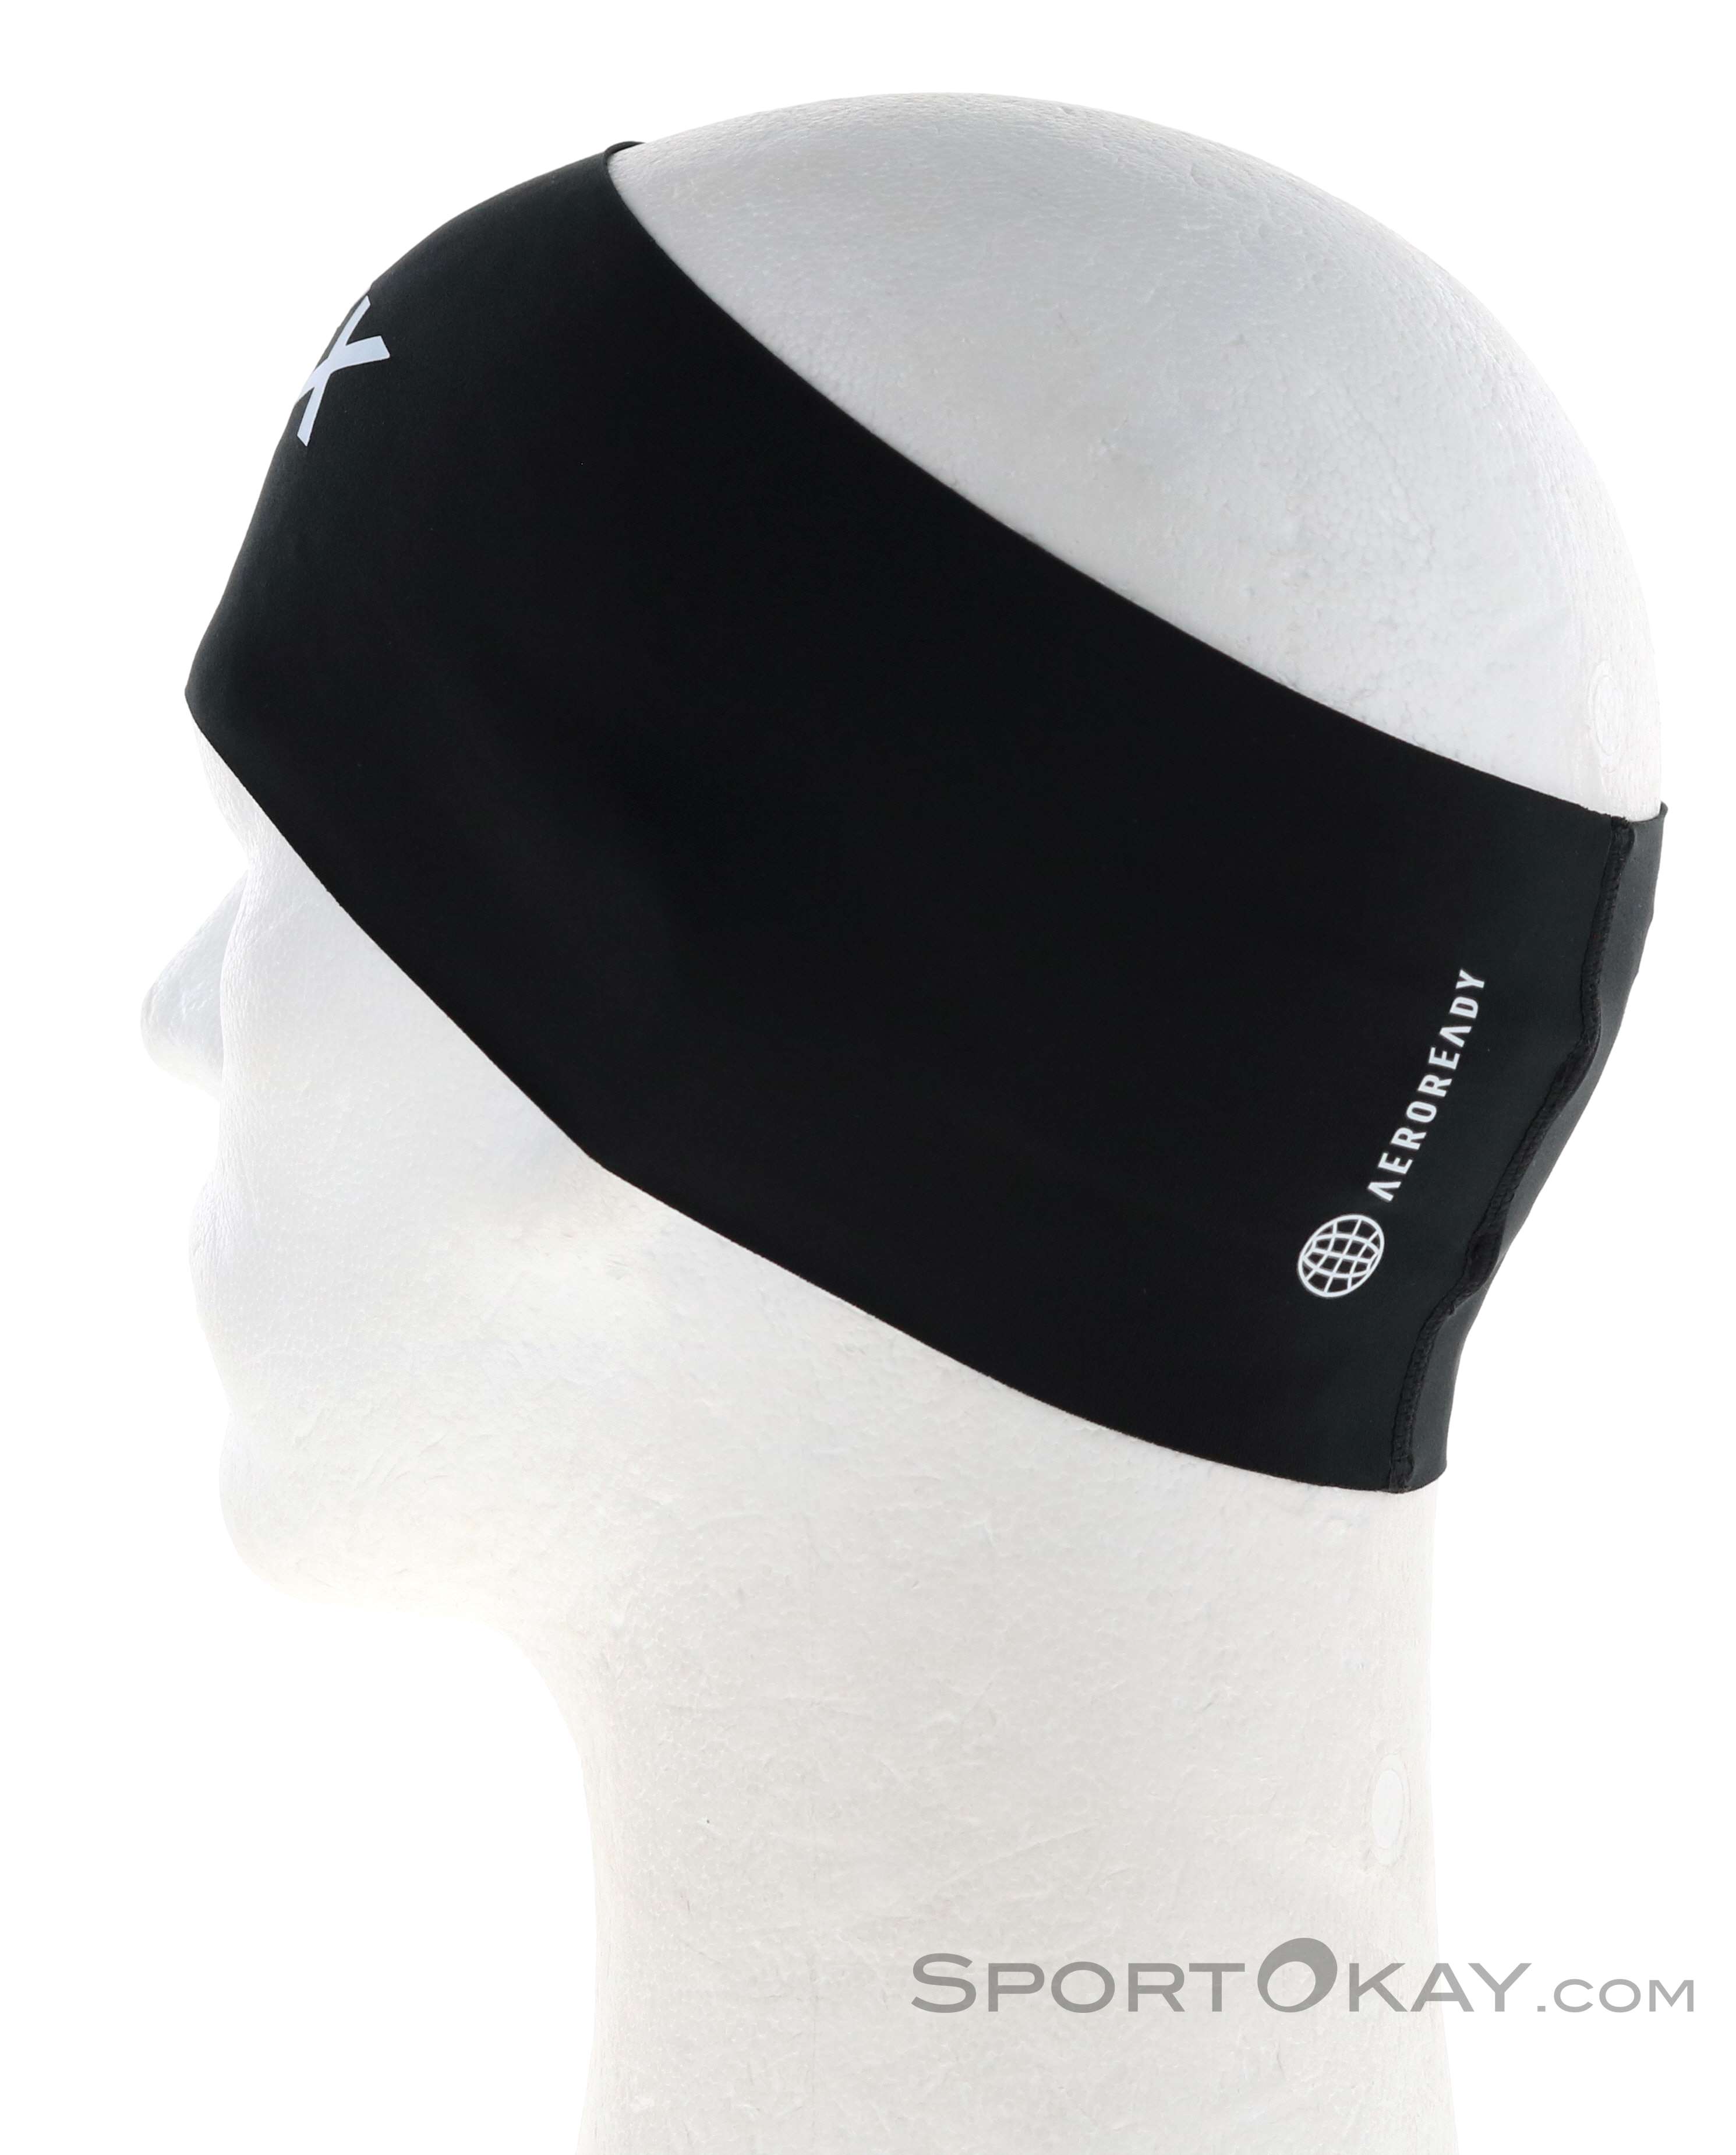 Terrex Headband & adidas - Outdoorbekleidung Stirnband - - - Alle Mützen Stirnbänder Outdoor